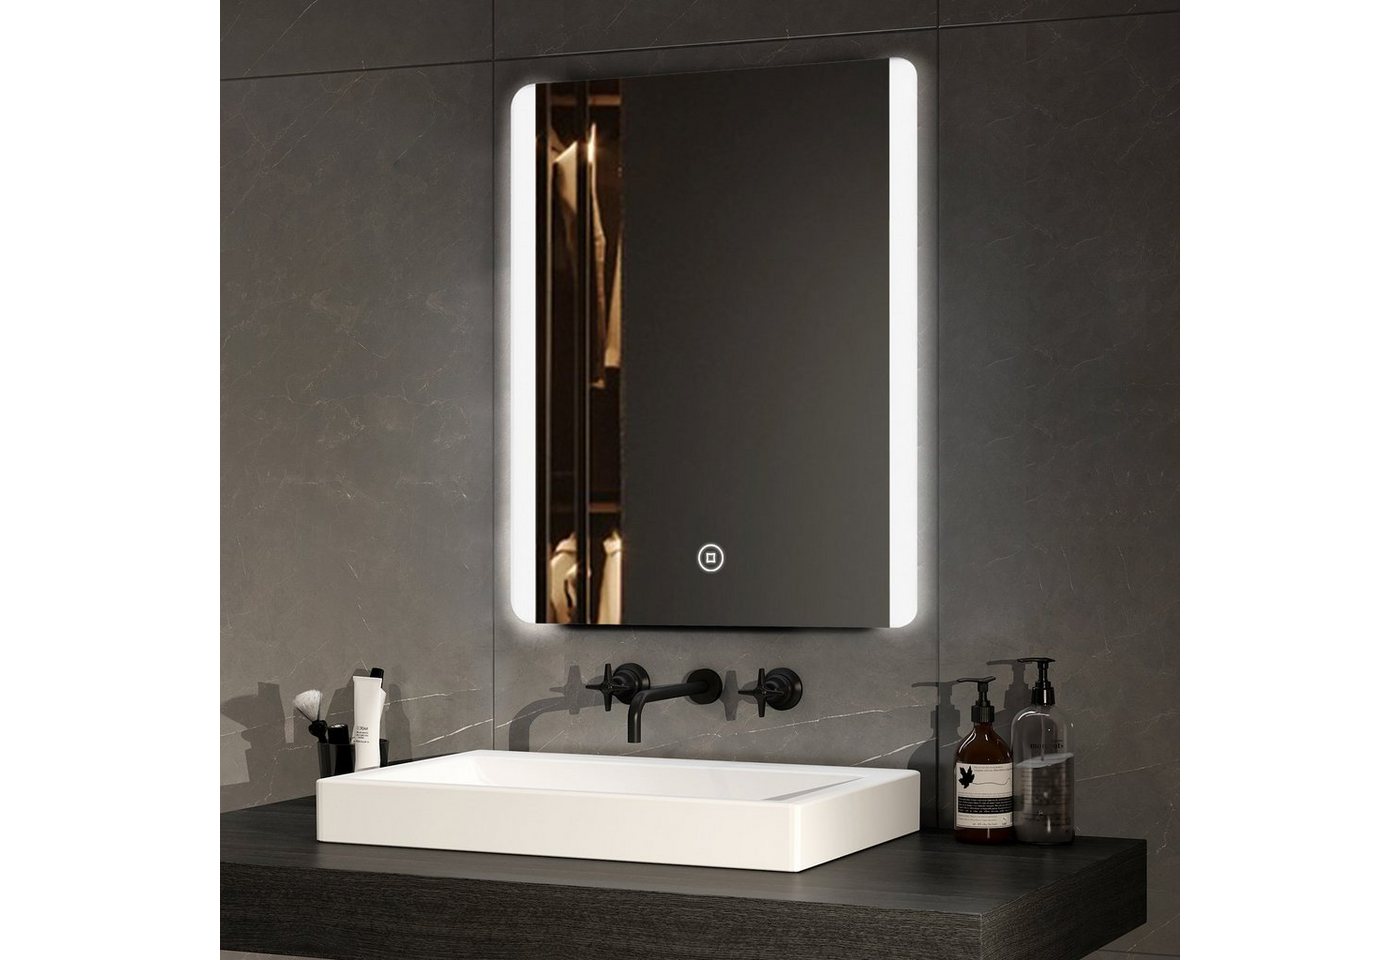 EMKE Badspiegel EMKE LED Badspiegel Badezimmerspiegel, mit Warmweißer oder kaltweiß Beleuchtung Modell 2 von EMKE